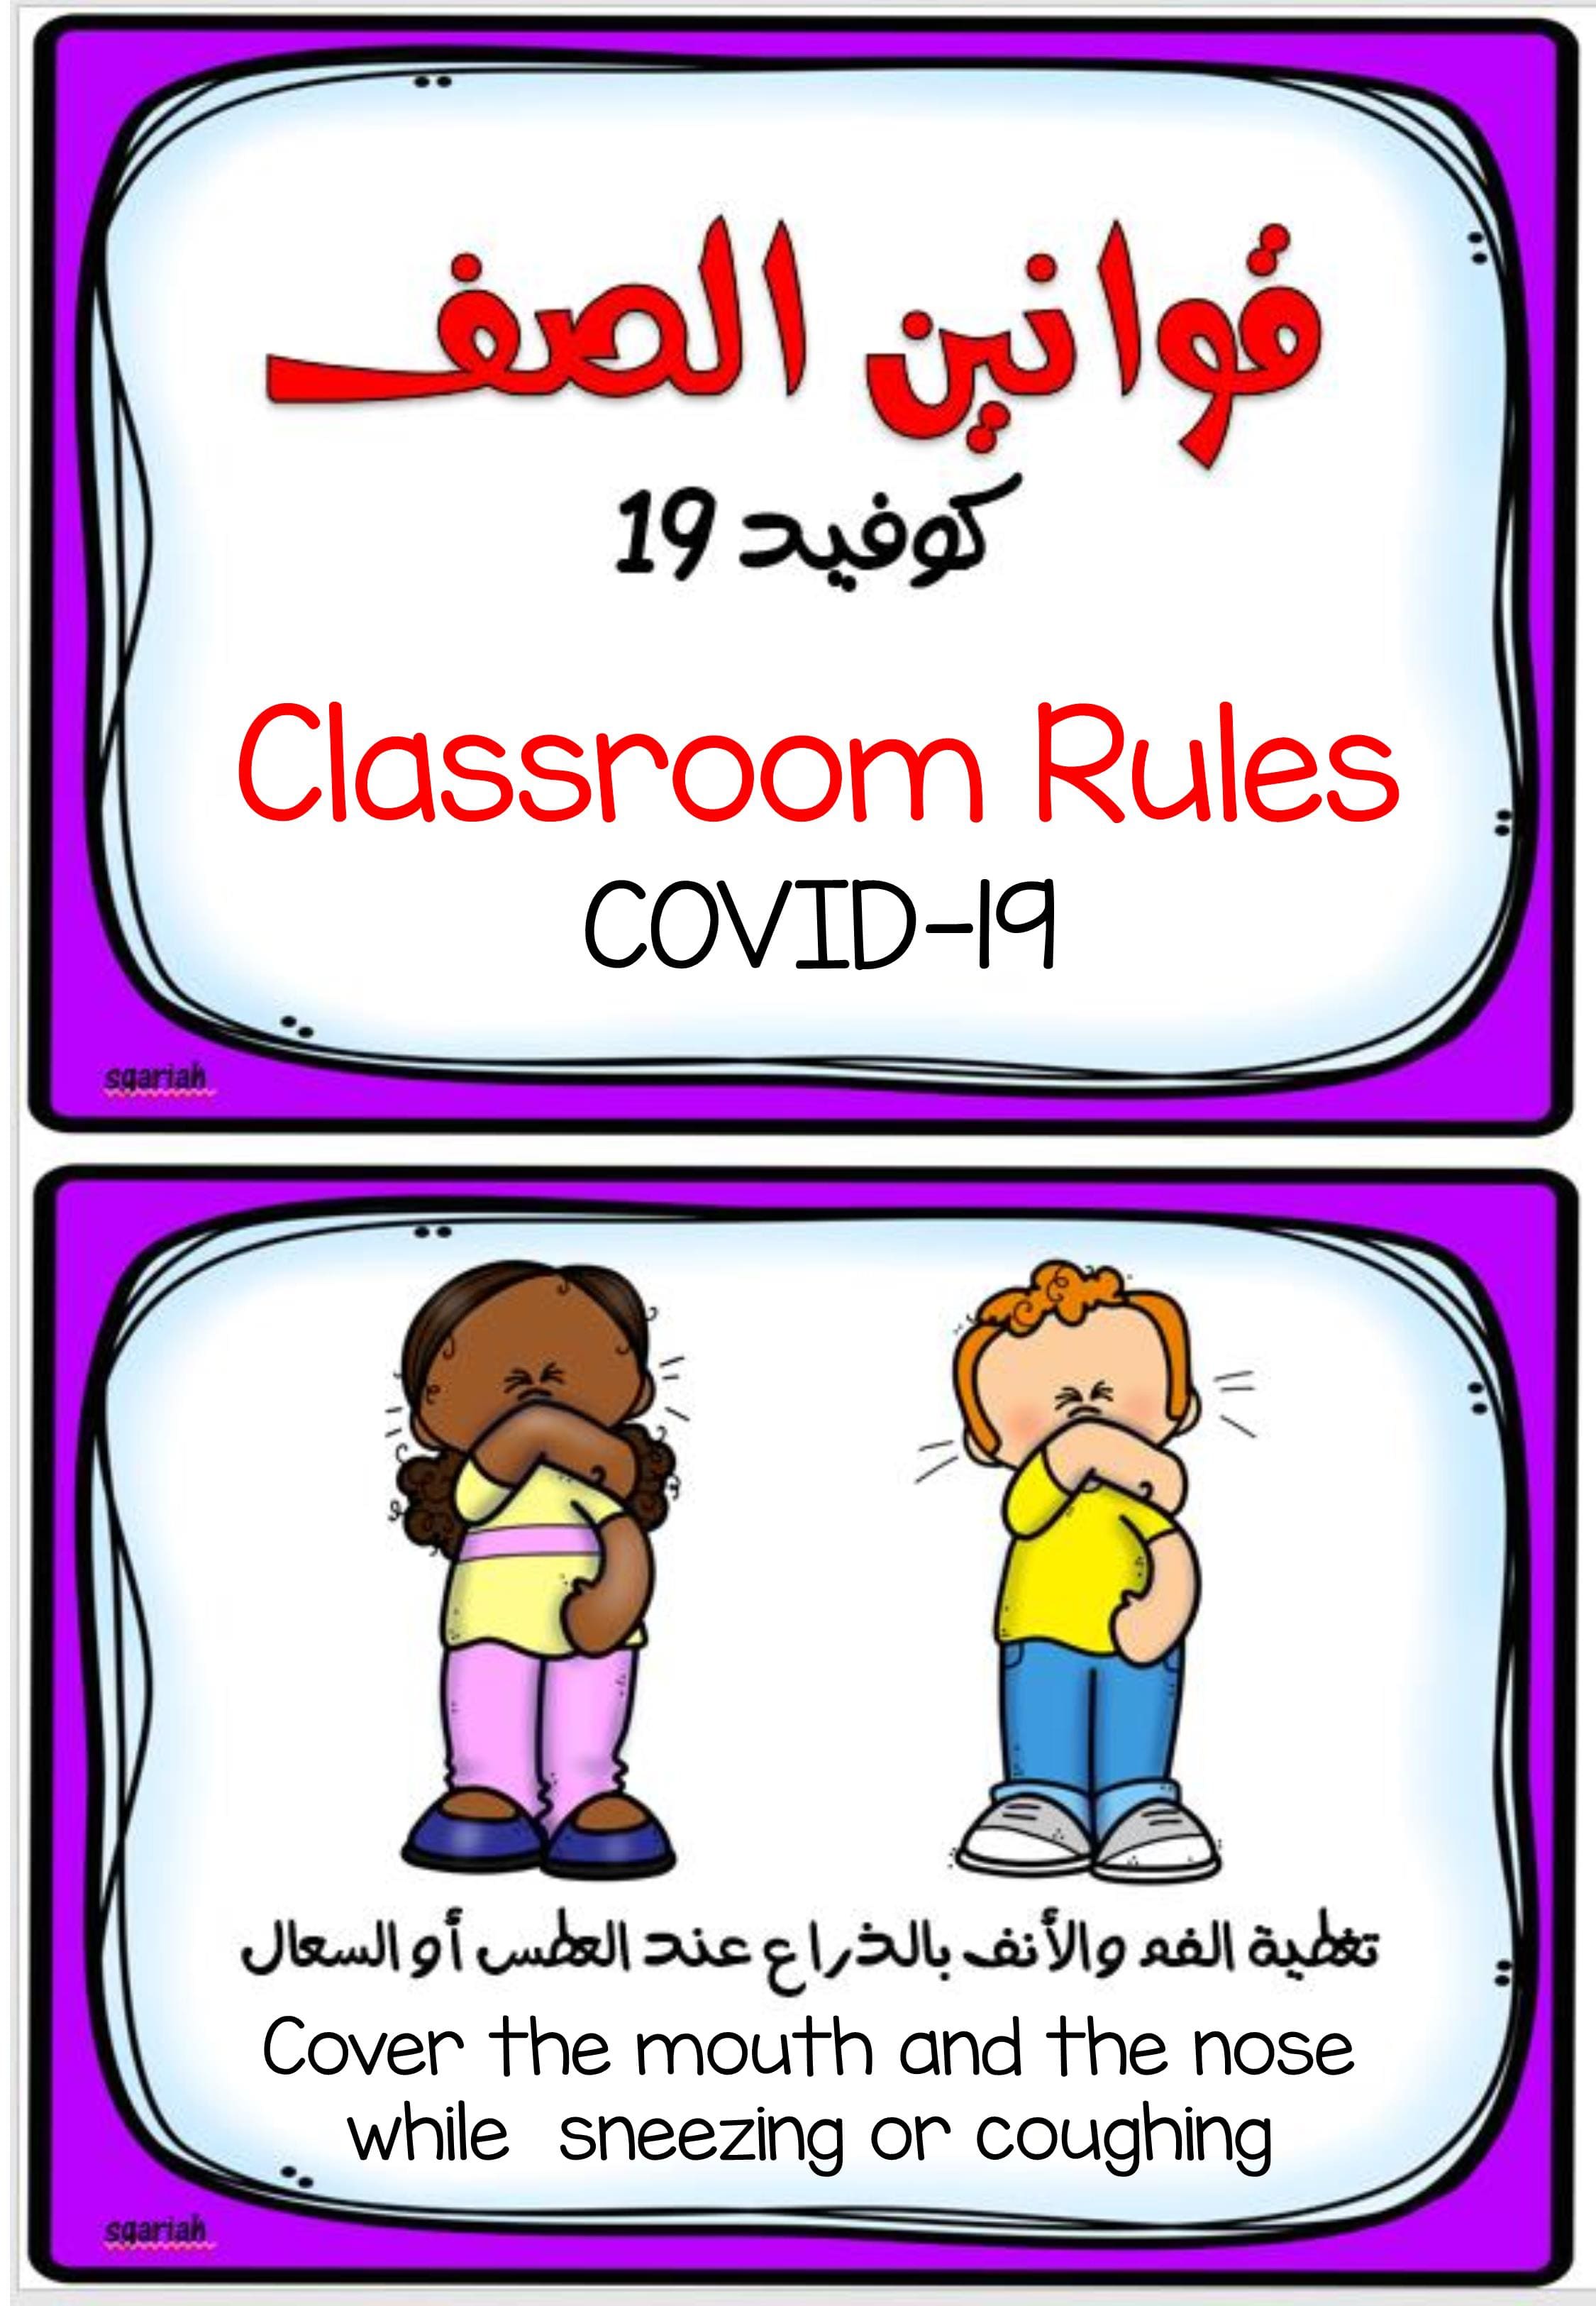 بطاقات تعليمية لقوانين الصف كوفيد 19 لرياض الاطفال